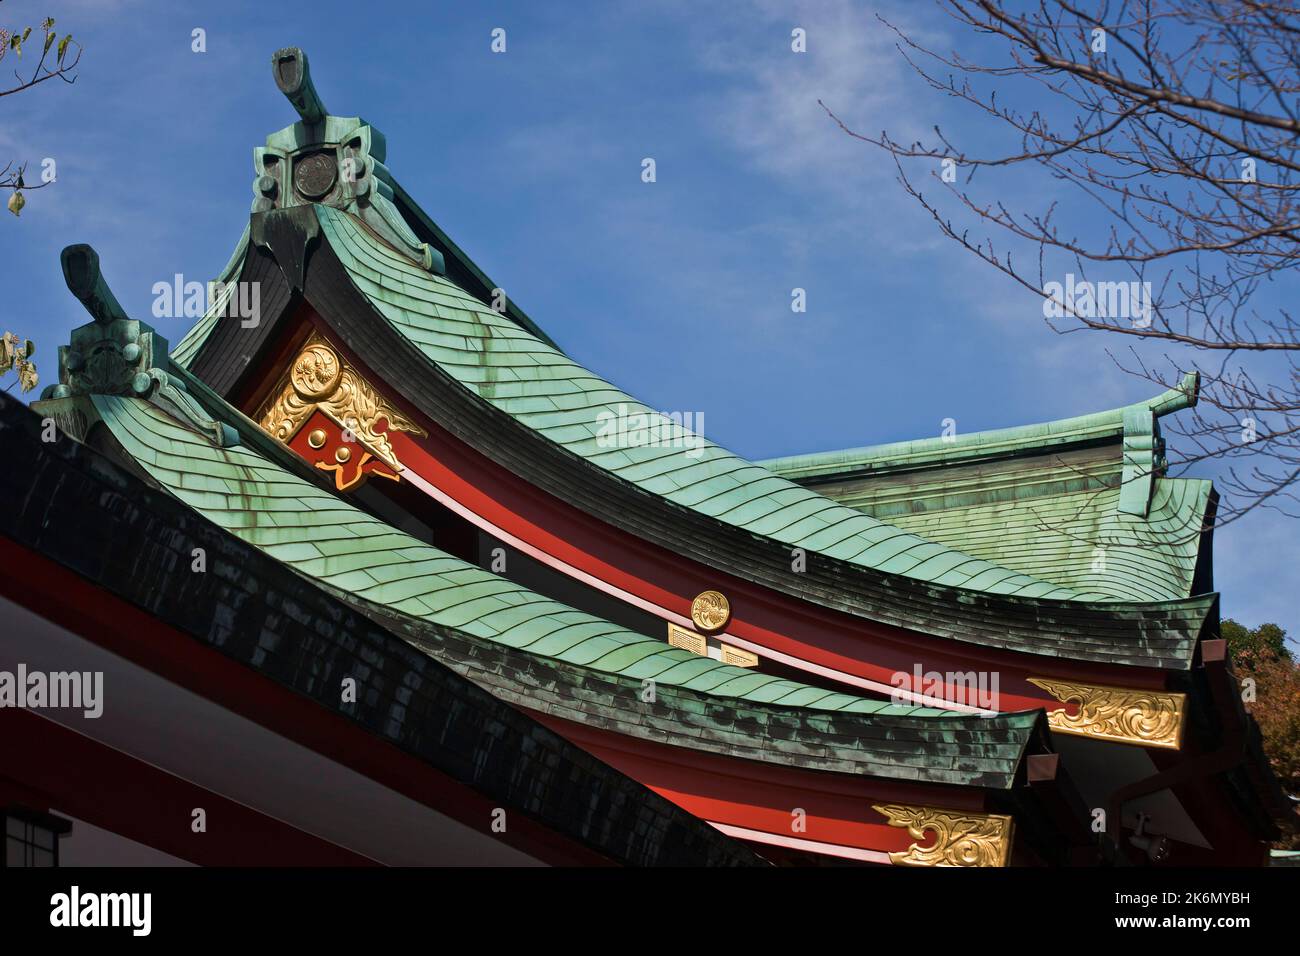 Dachdetails Hie Jinja-Schrein Tokio Japan Stockfoto